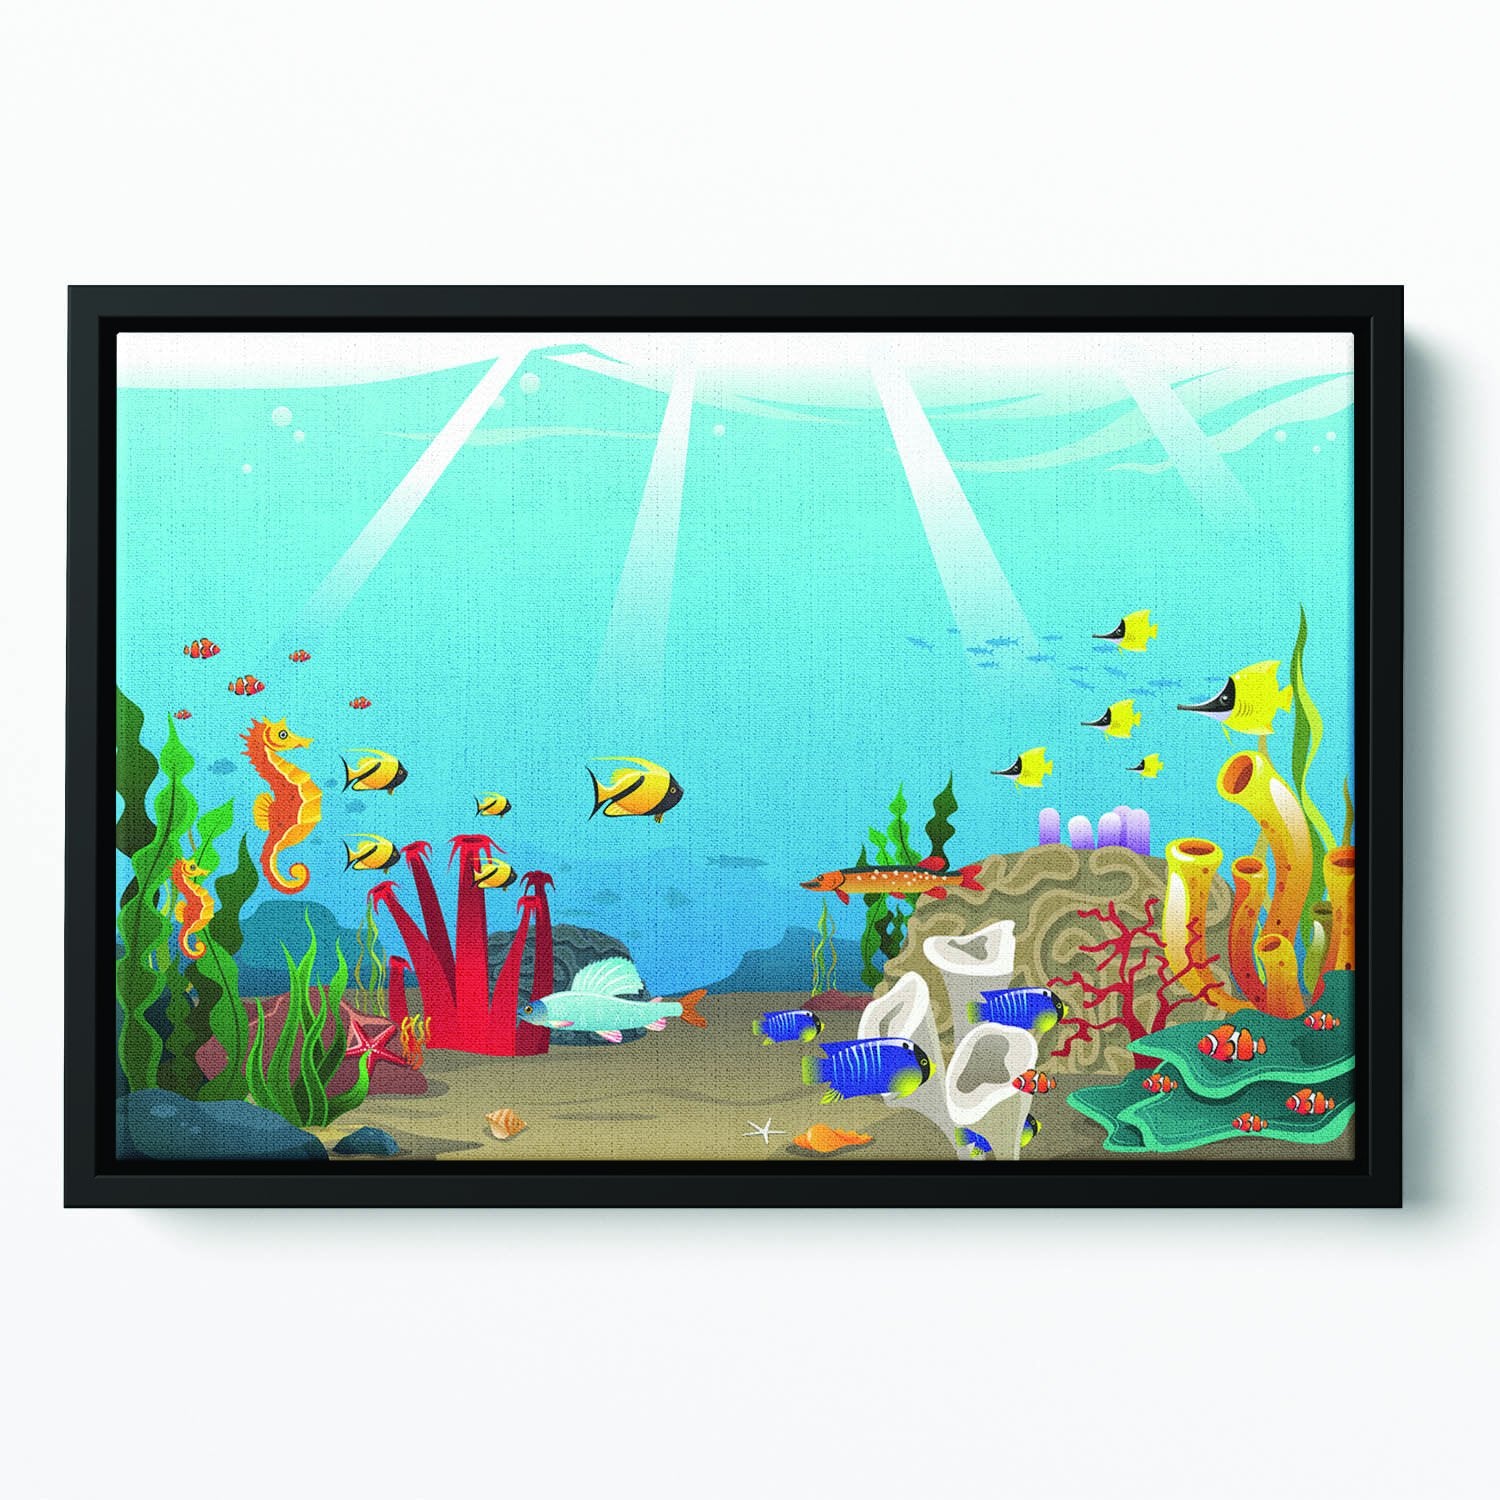 Illustration of marine life design Floating Framed Canvas